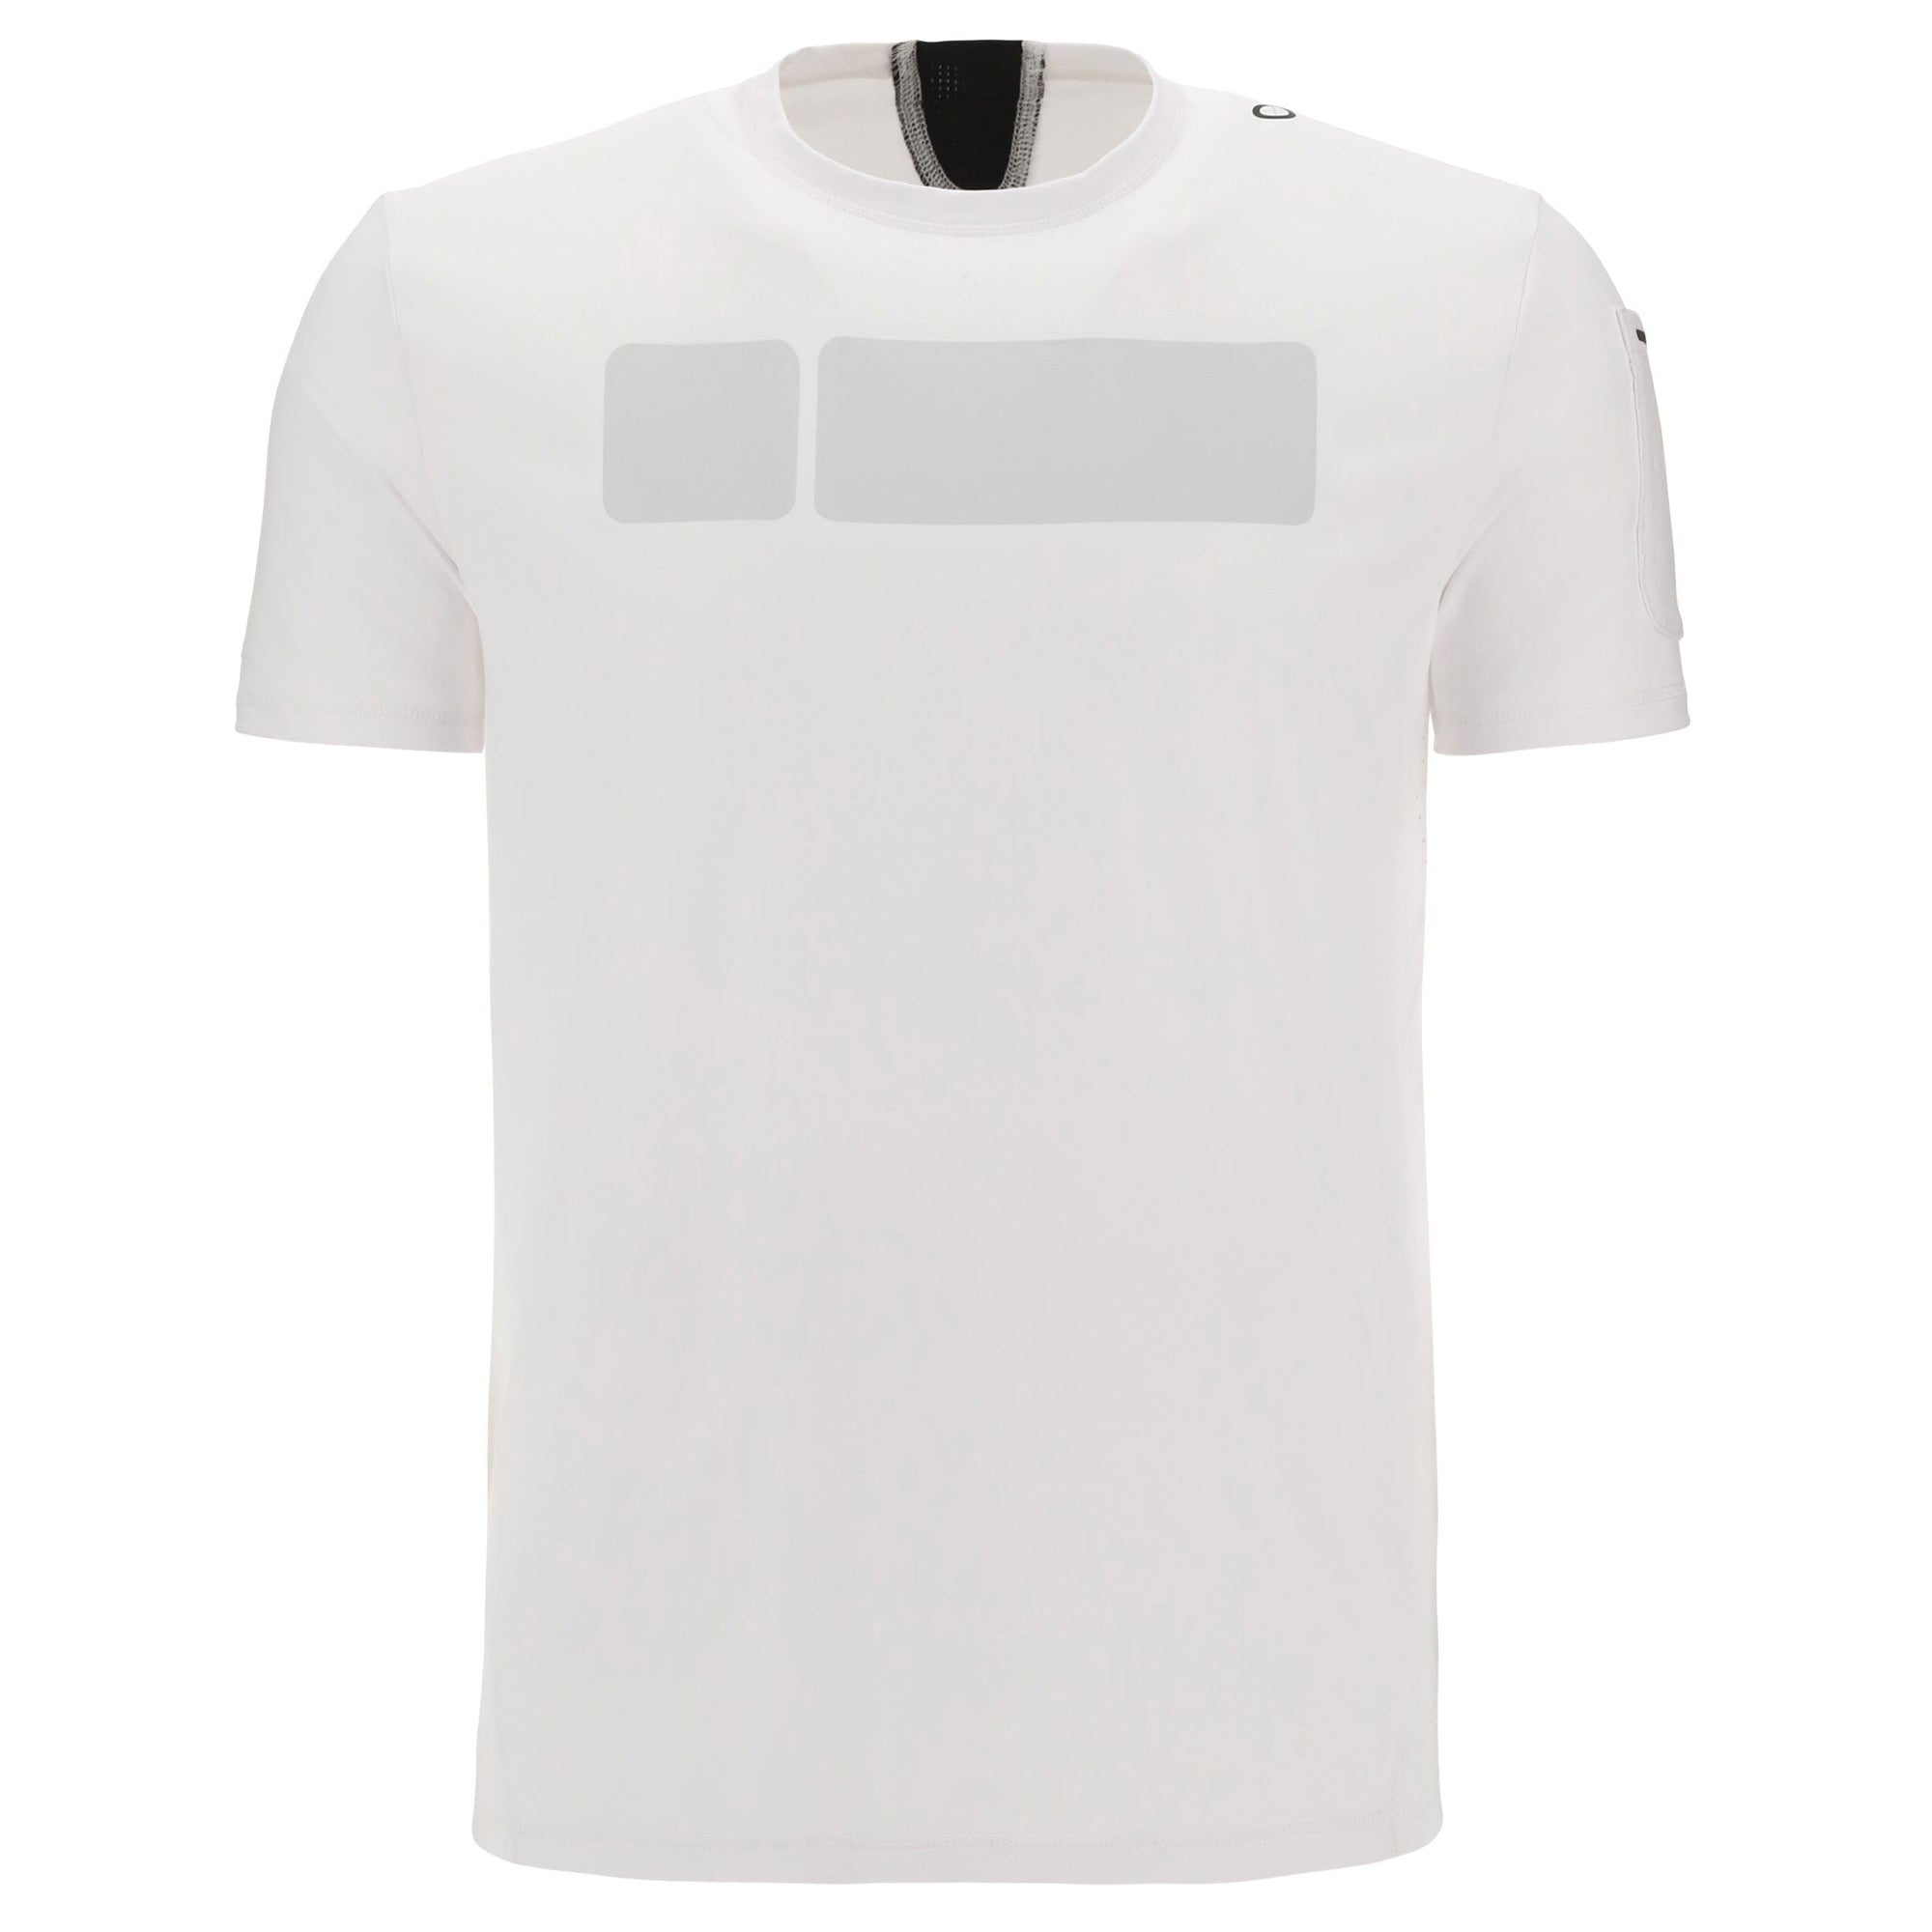 Mens Hi Tech Diwo T Shirt - White 1